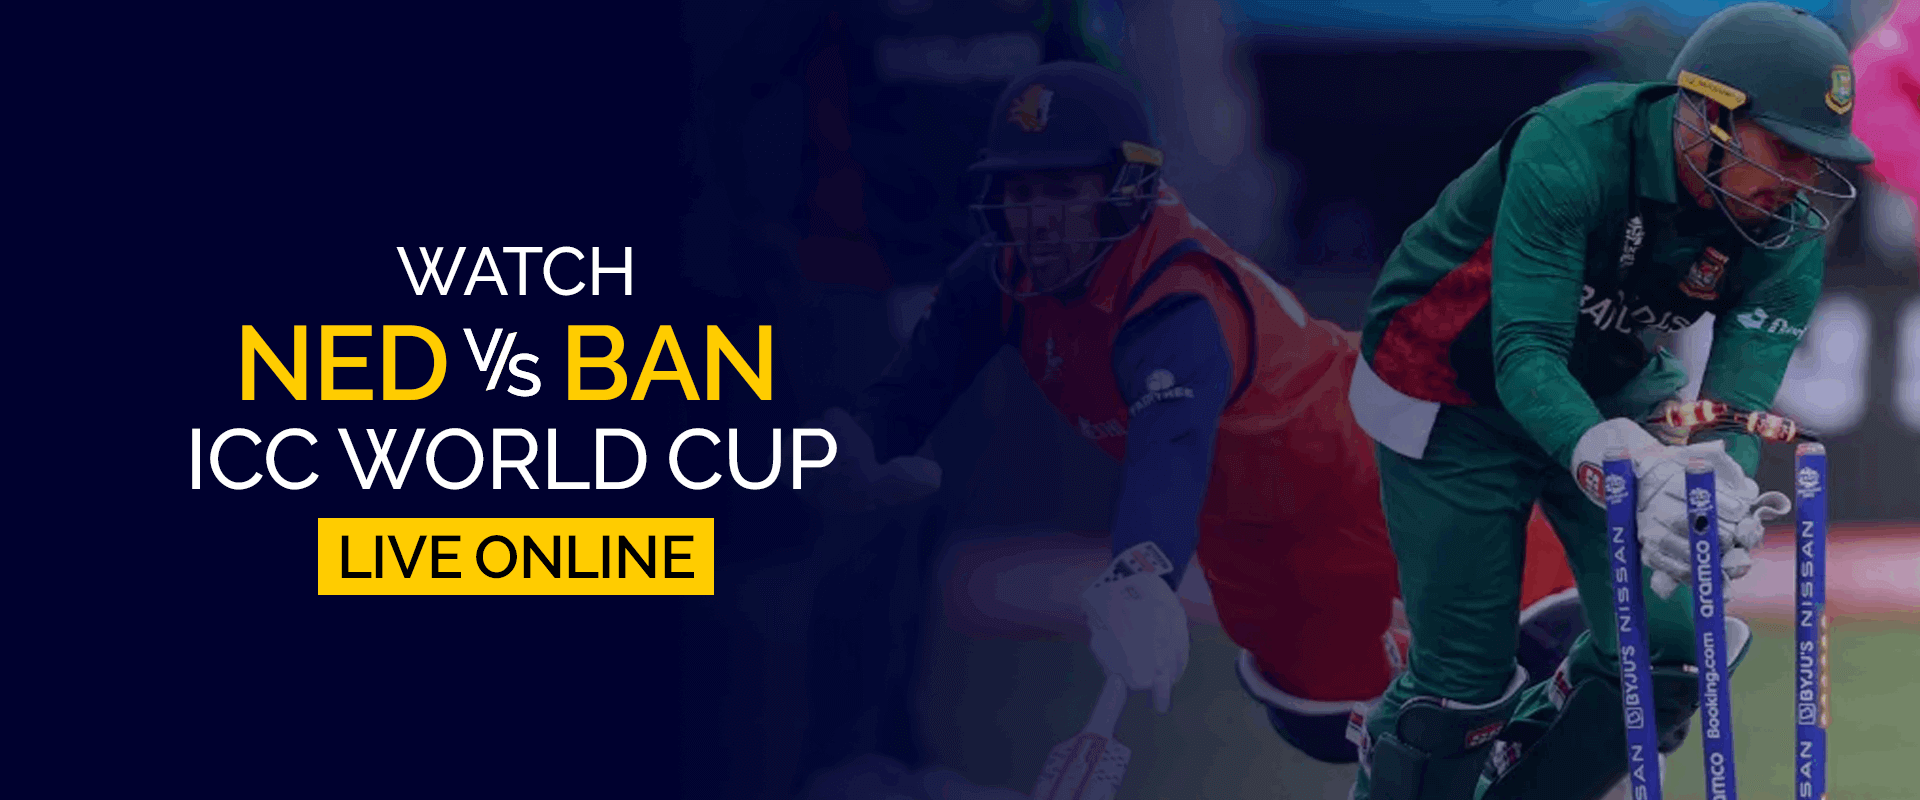 Guarda la Coppa del mondo ICC Olanda vs Bangladesh in diretta online